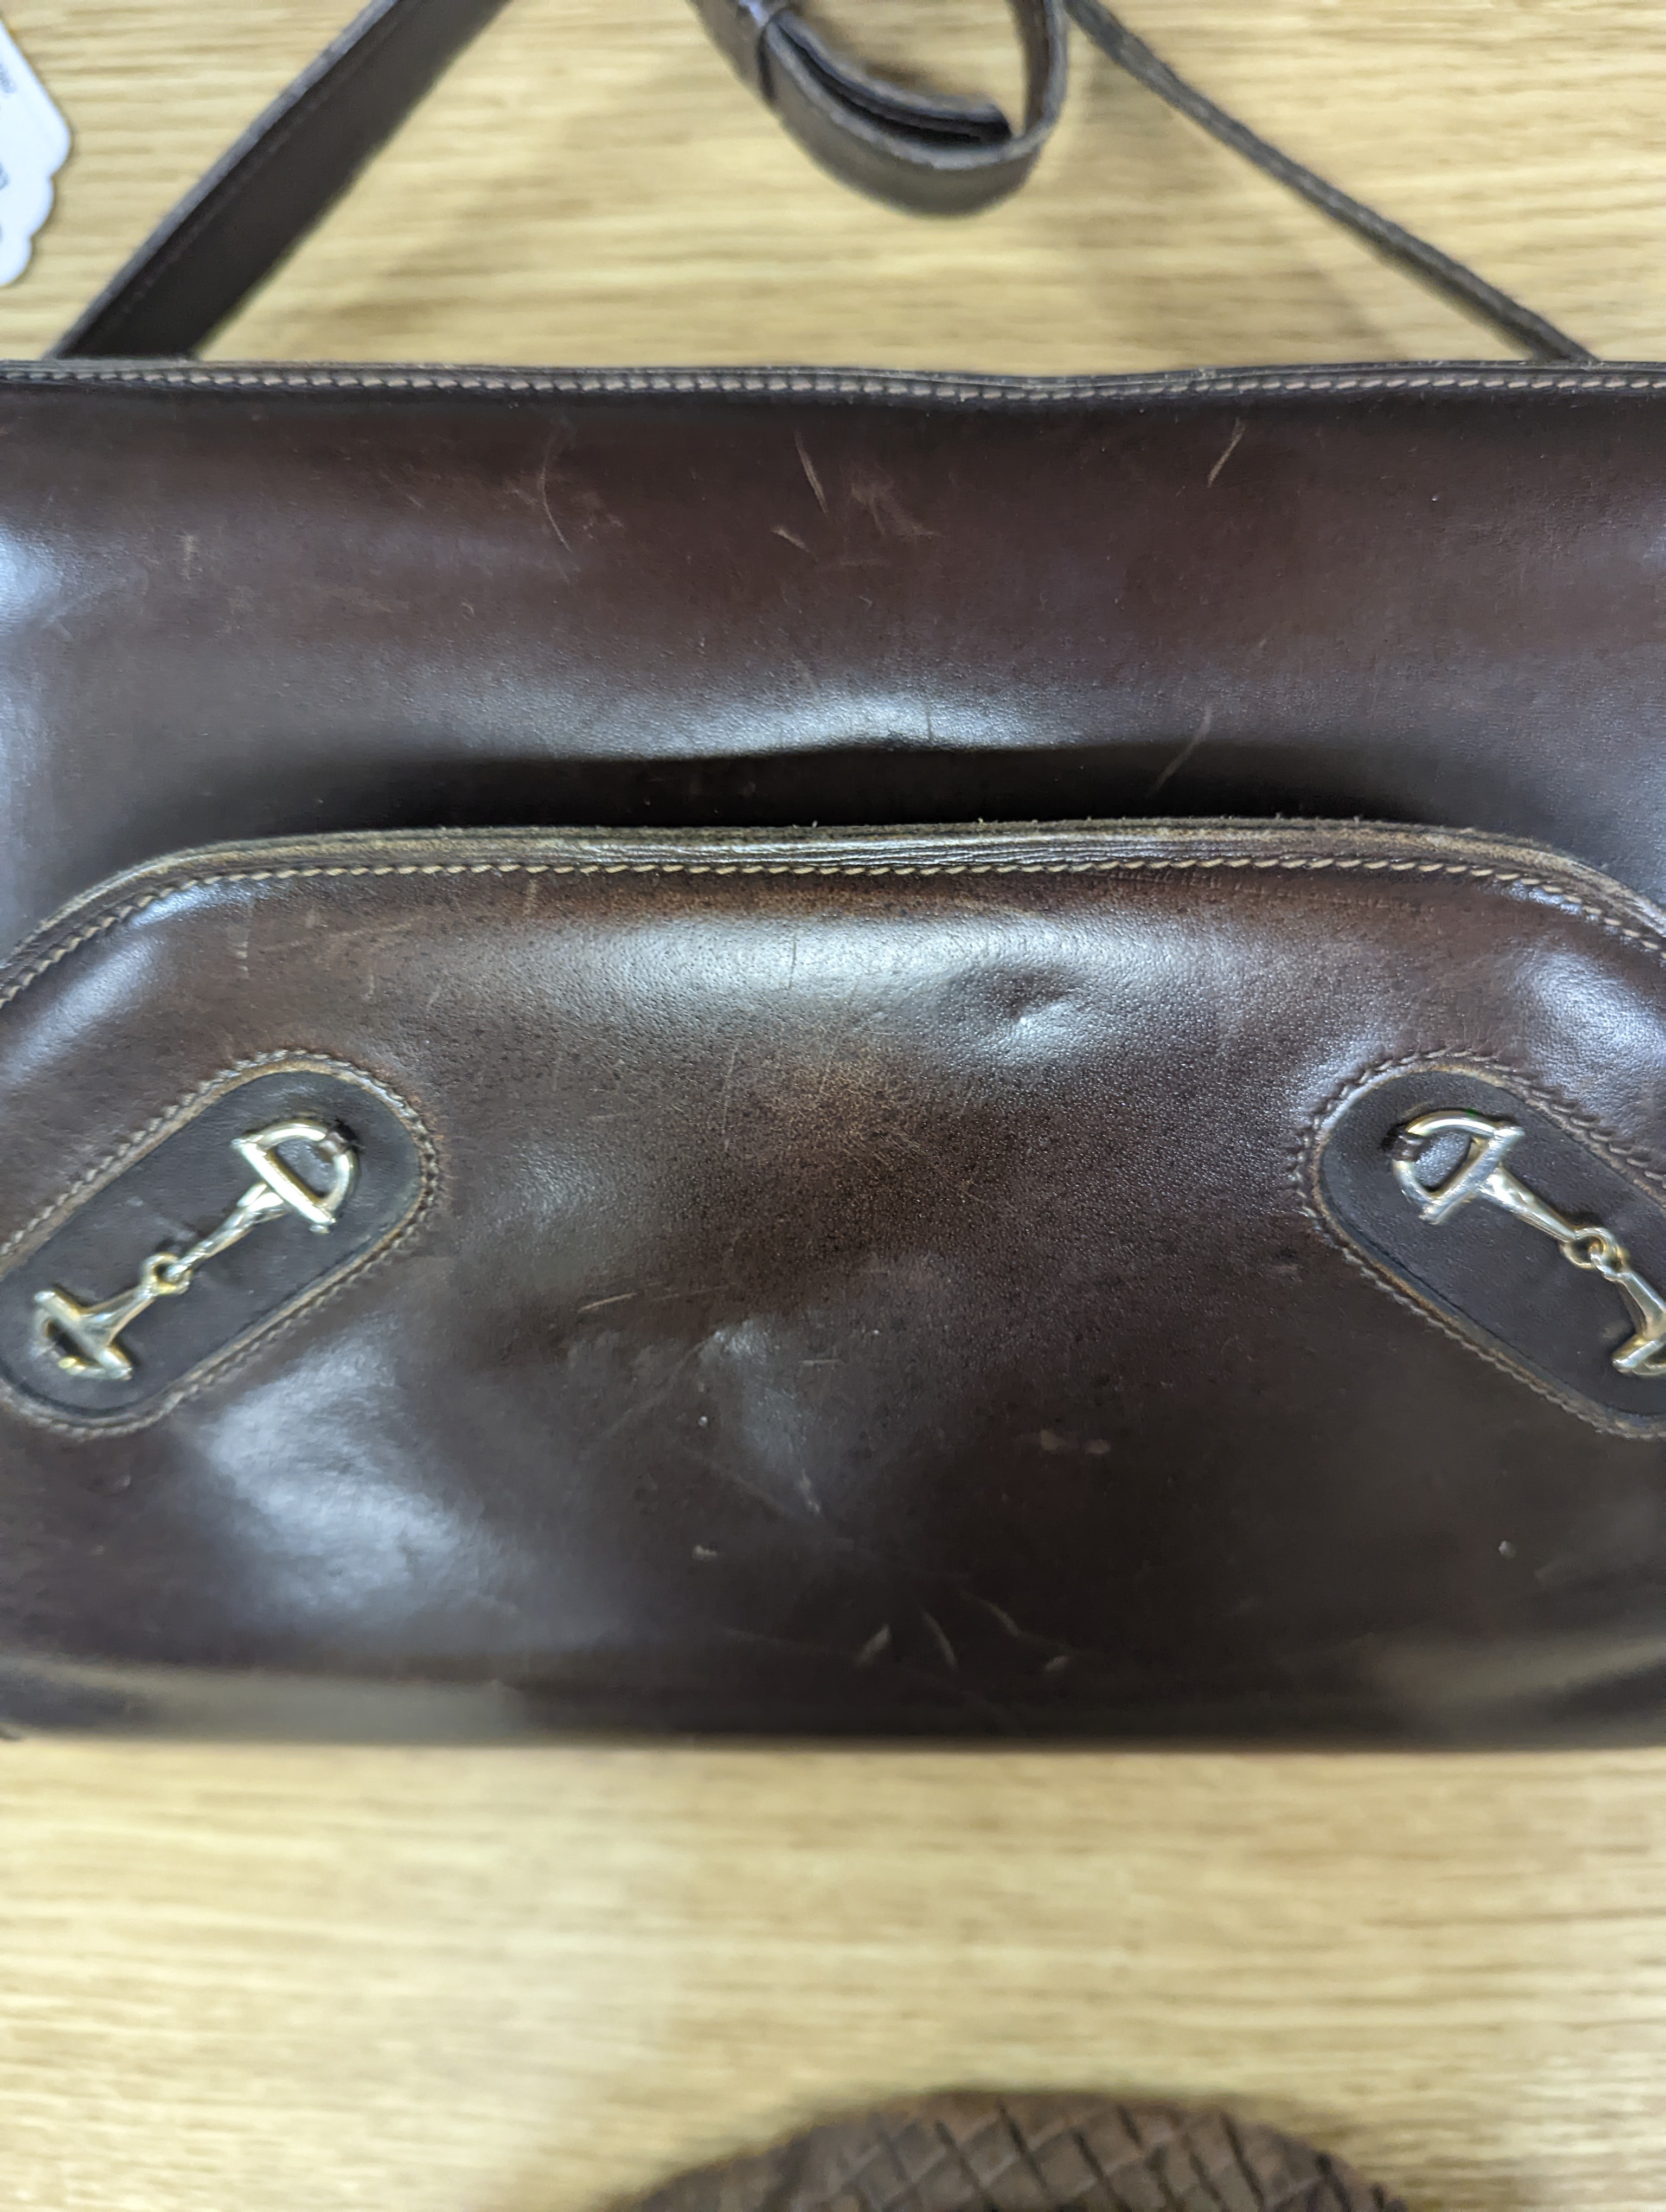 A vintage brown leather handbag stamped 